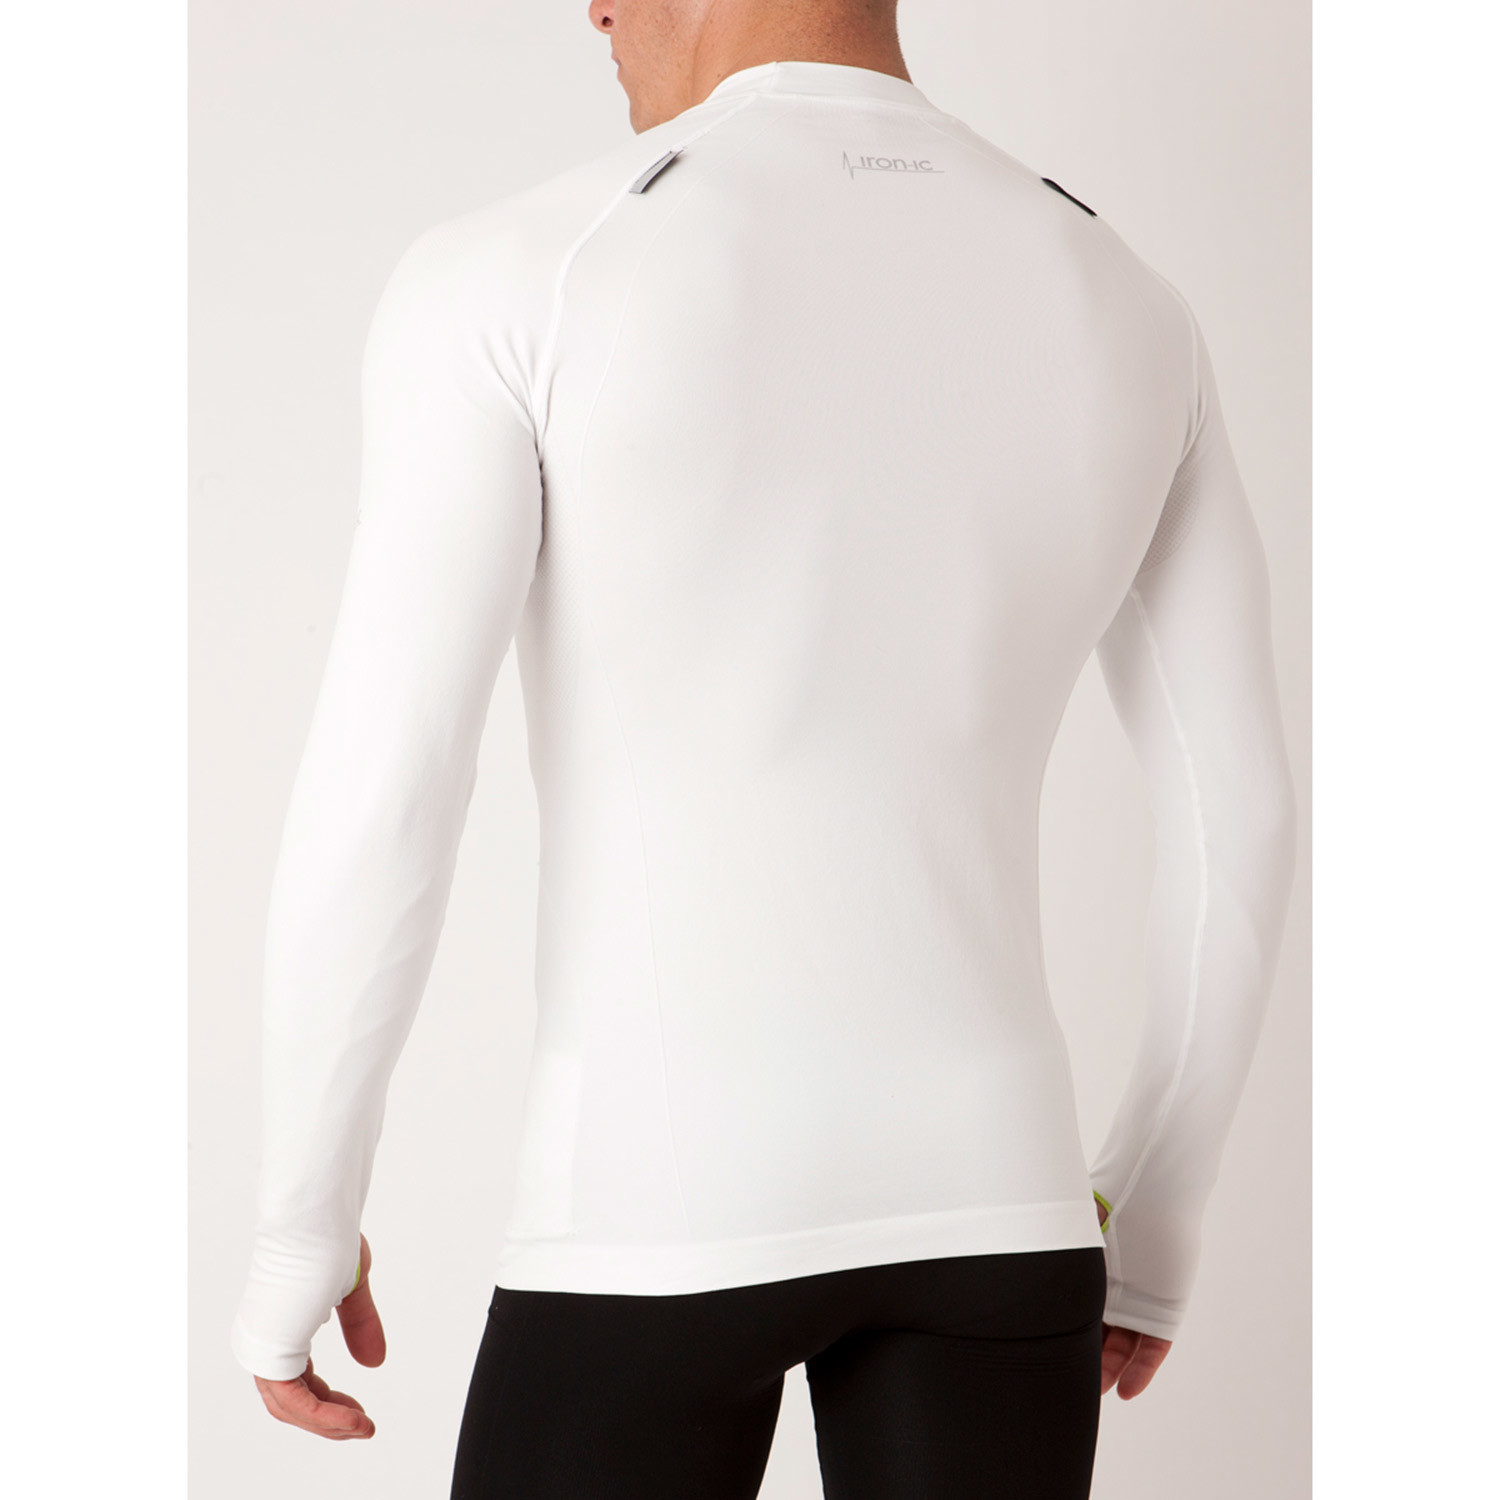 Iron-ic // Thumb Hole Athletic Shirt // White (S) - Advanced Athletic ...